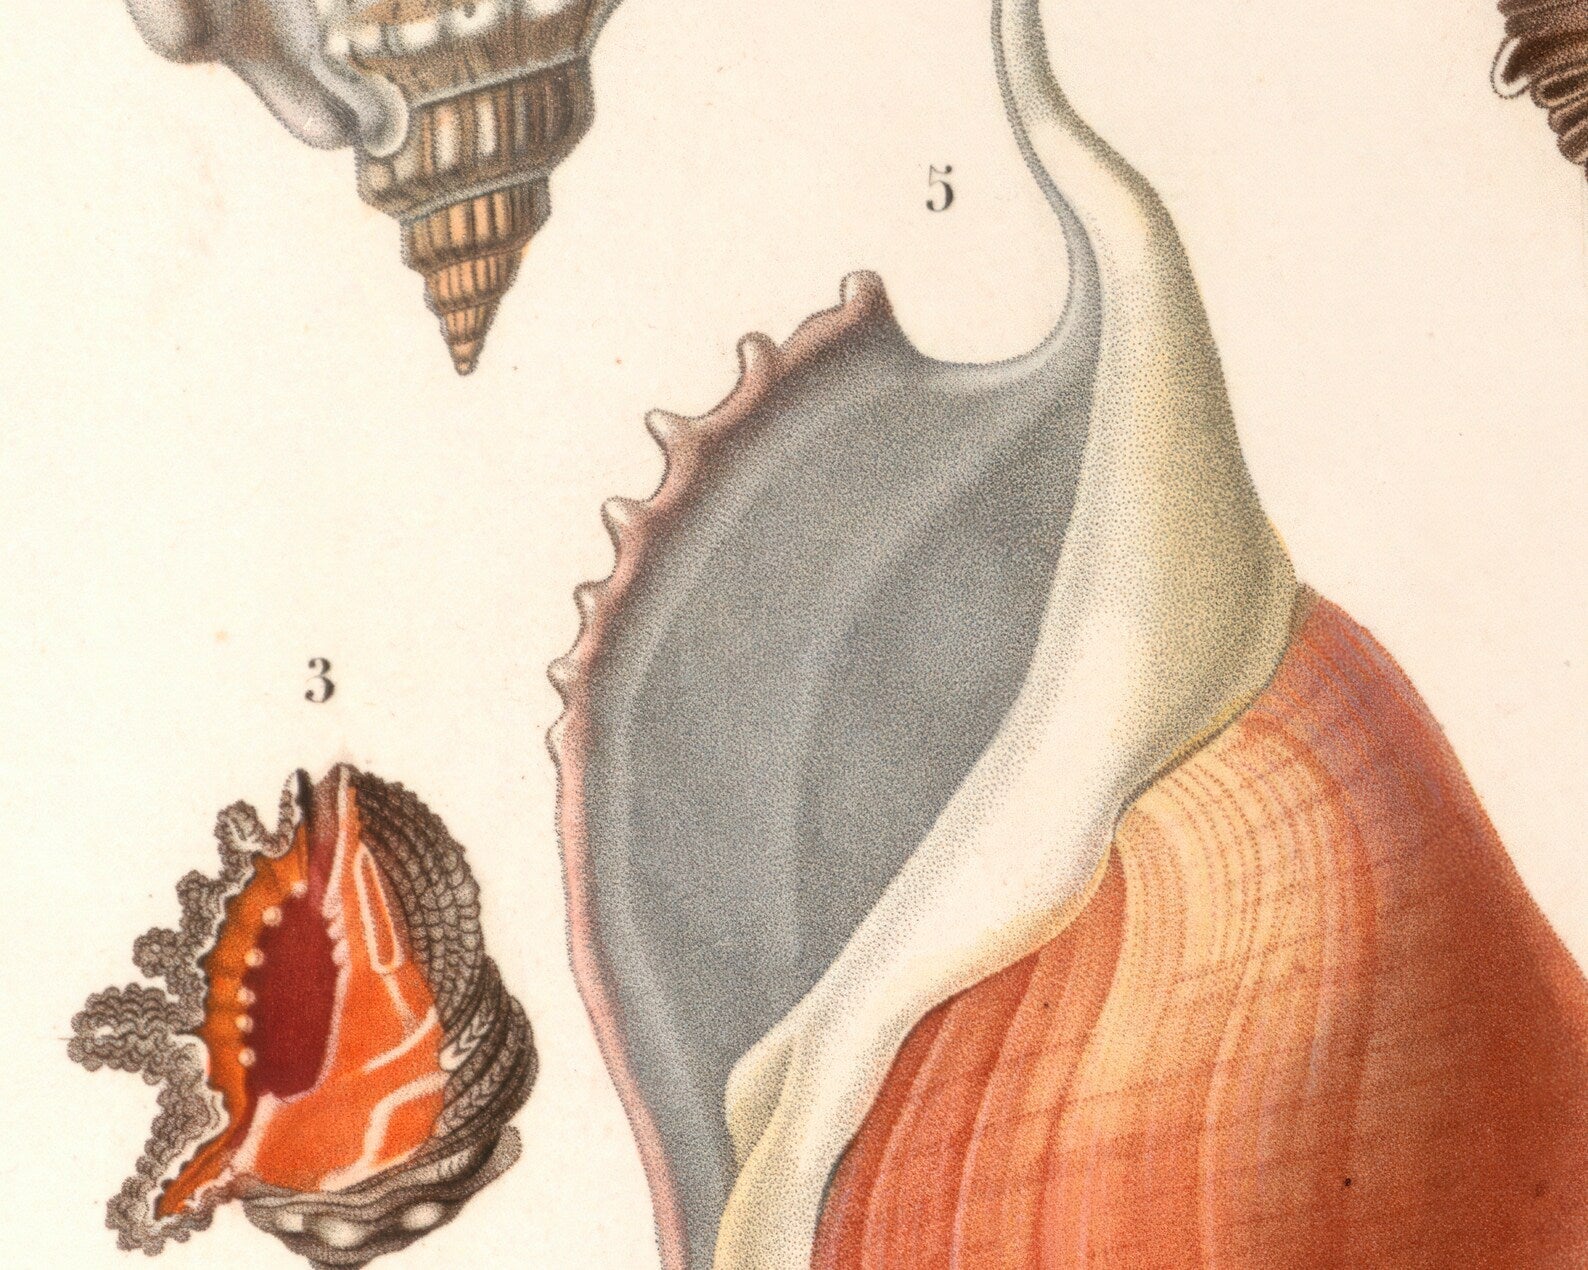 Vintage Nature Illustration "Seashells" (c.1841) Charles d' Orbigny - Mabon Gallery